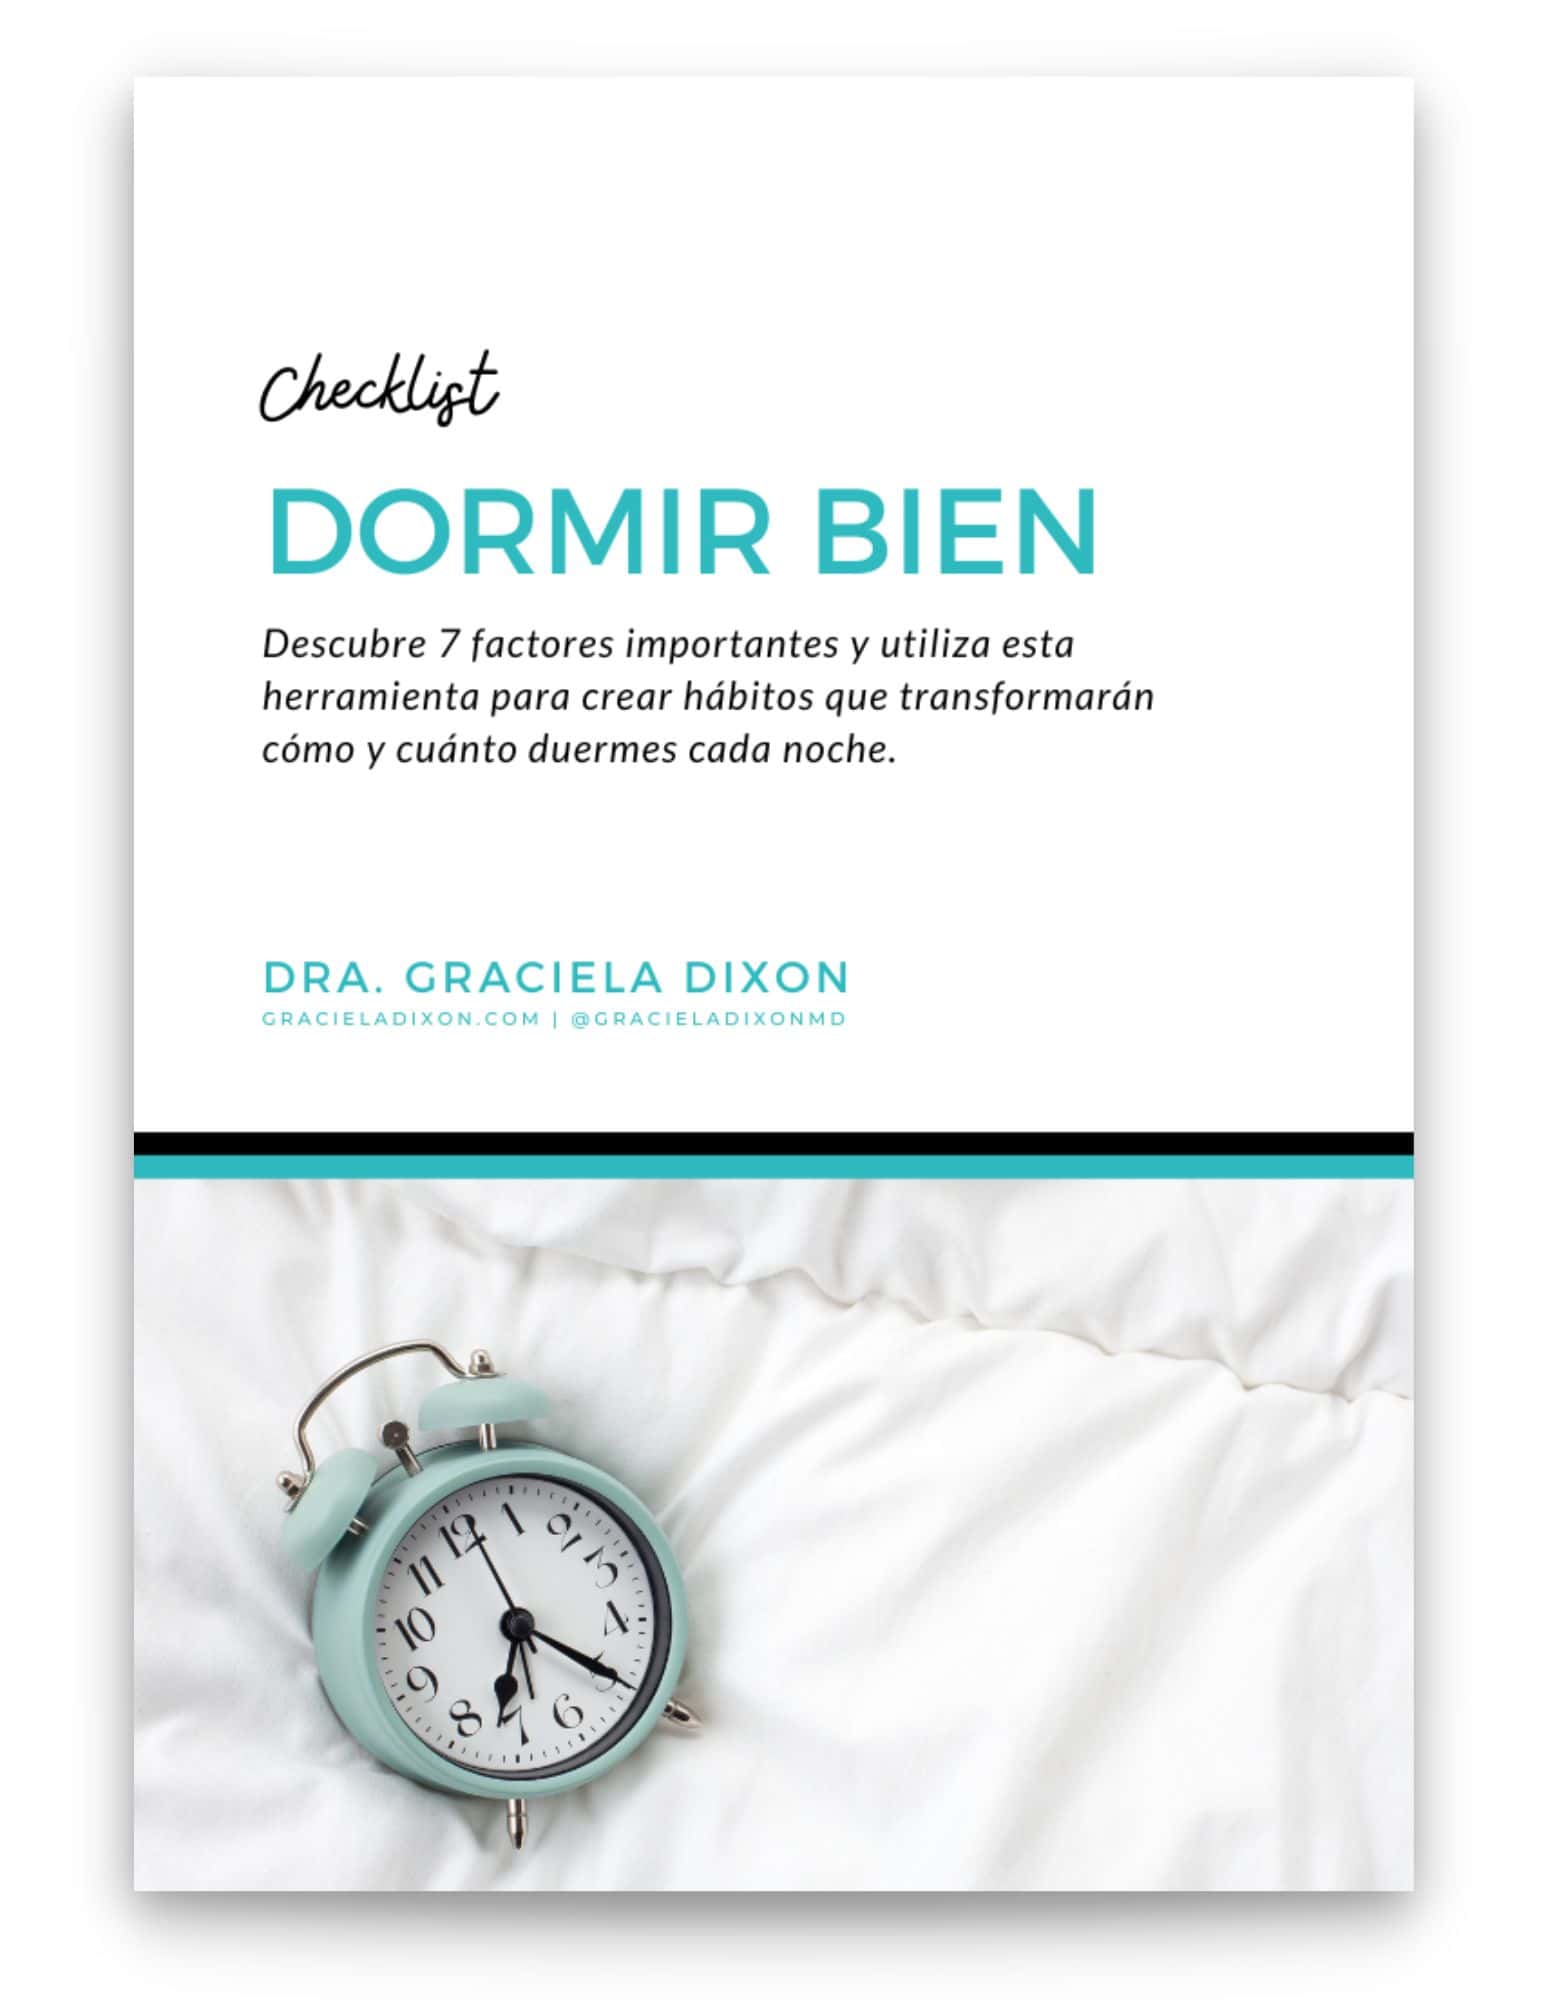 Checklist Dormir Bien - Dra. Graciela Dixon